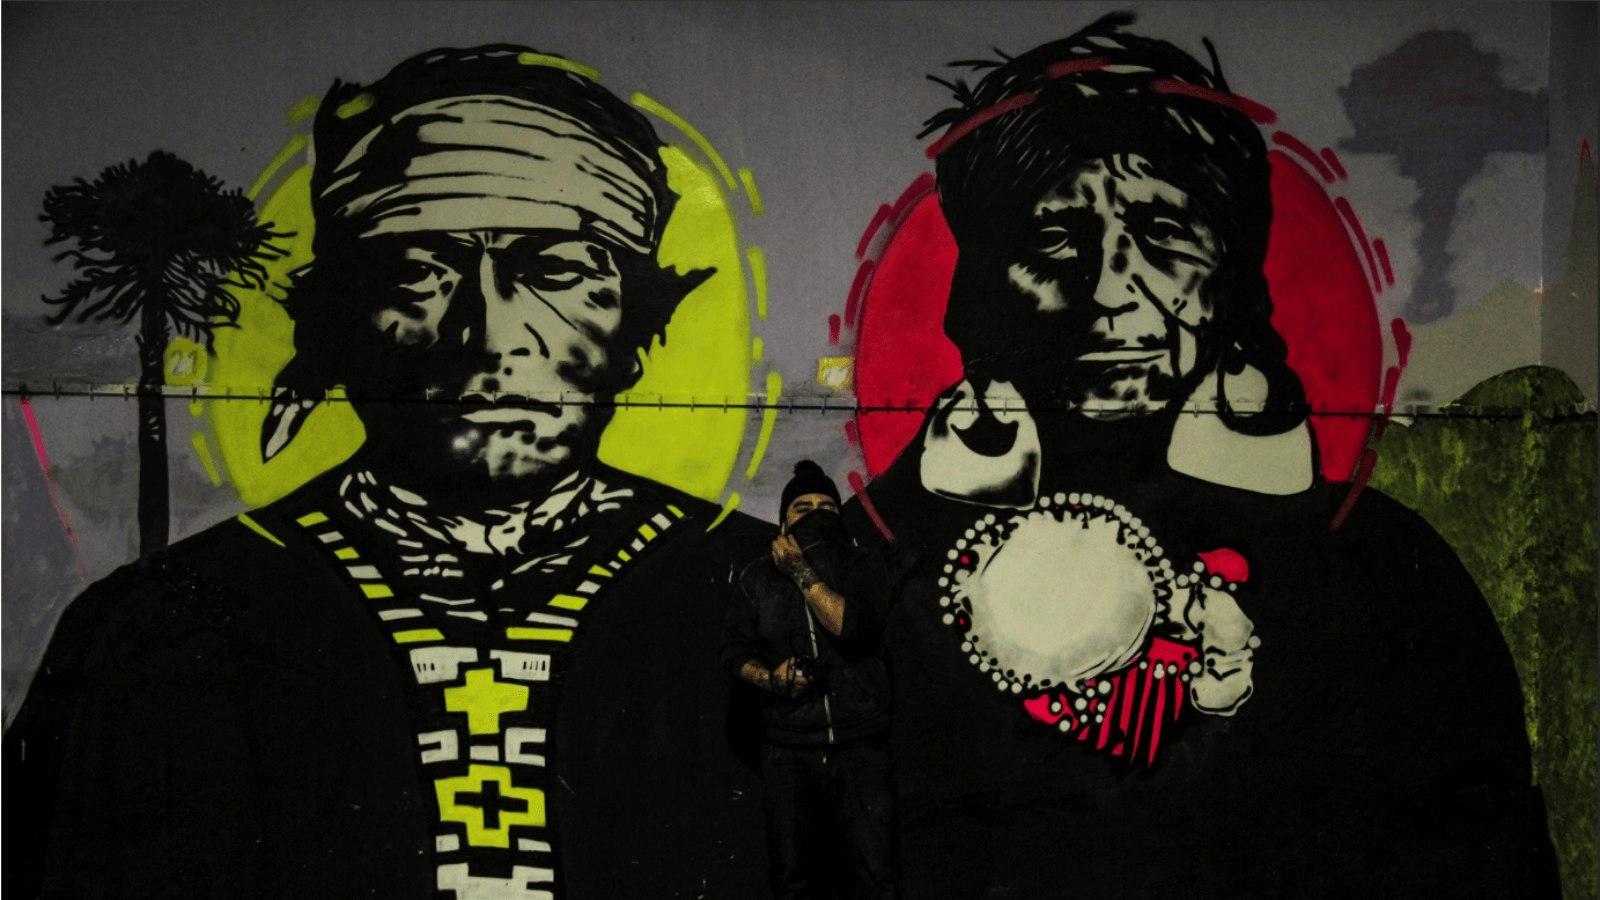 Prision Graff: murales e intervenciones de artistas en cárceles chilenas